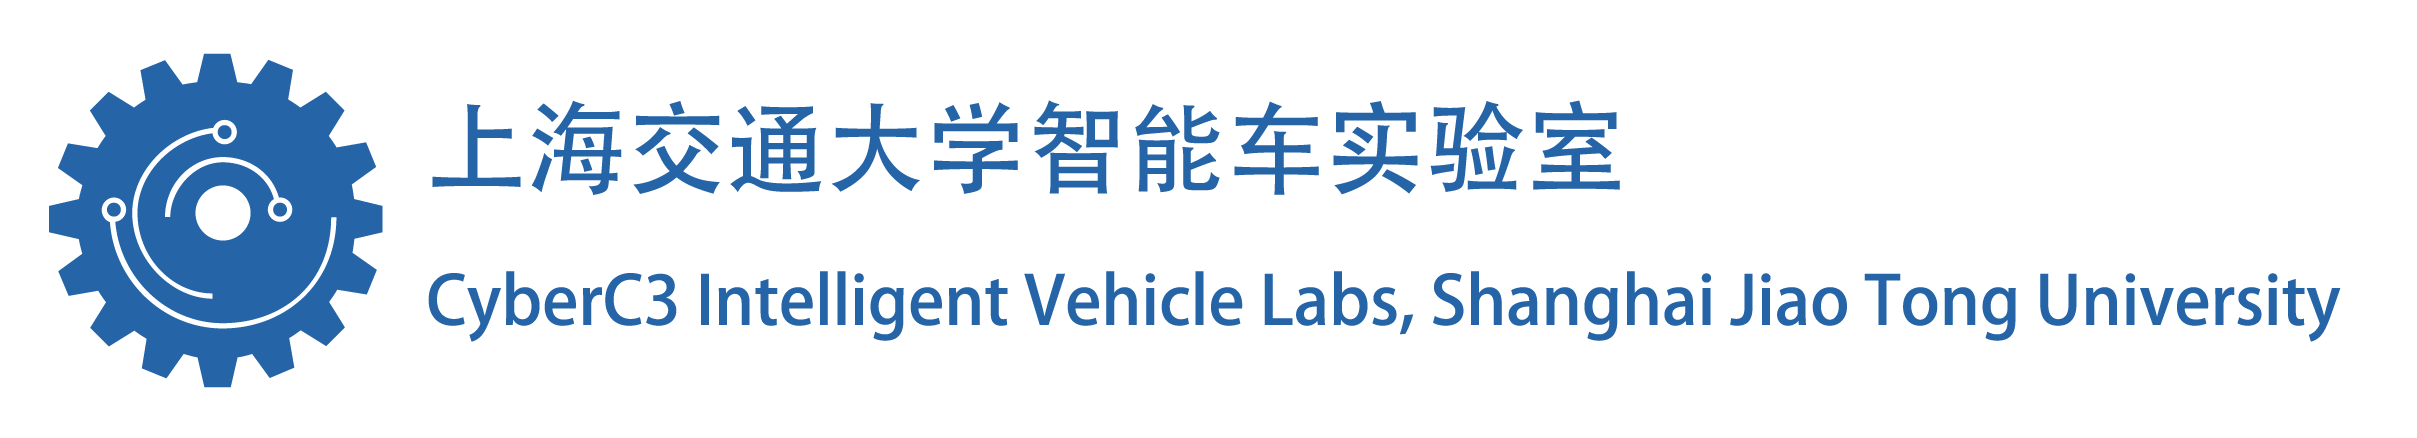 上海交通大学智能车实验室